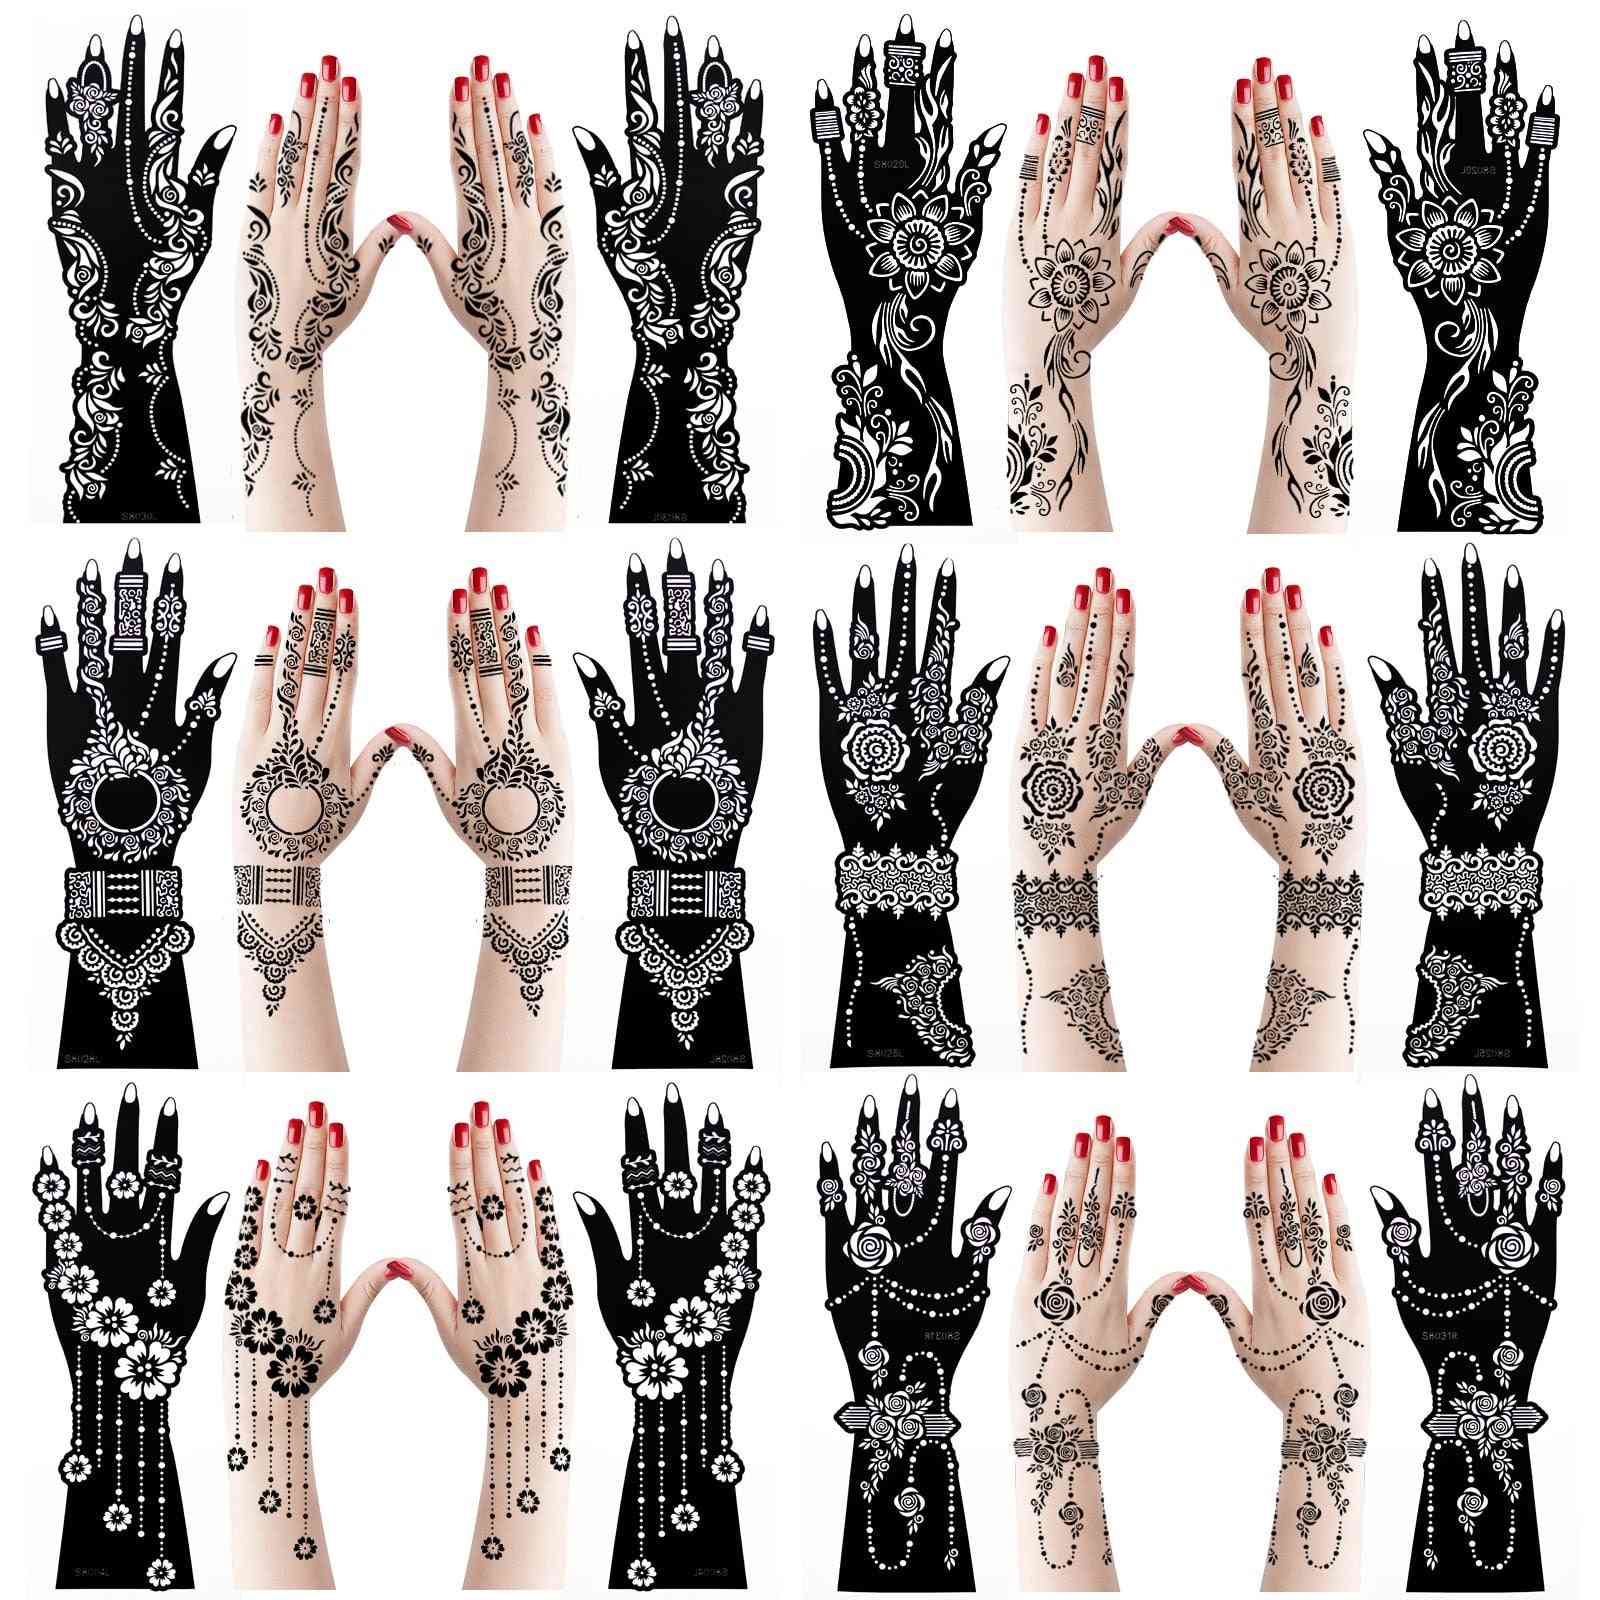 Grands pochoirs de tatouage au henné